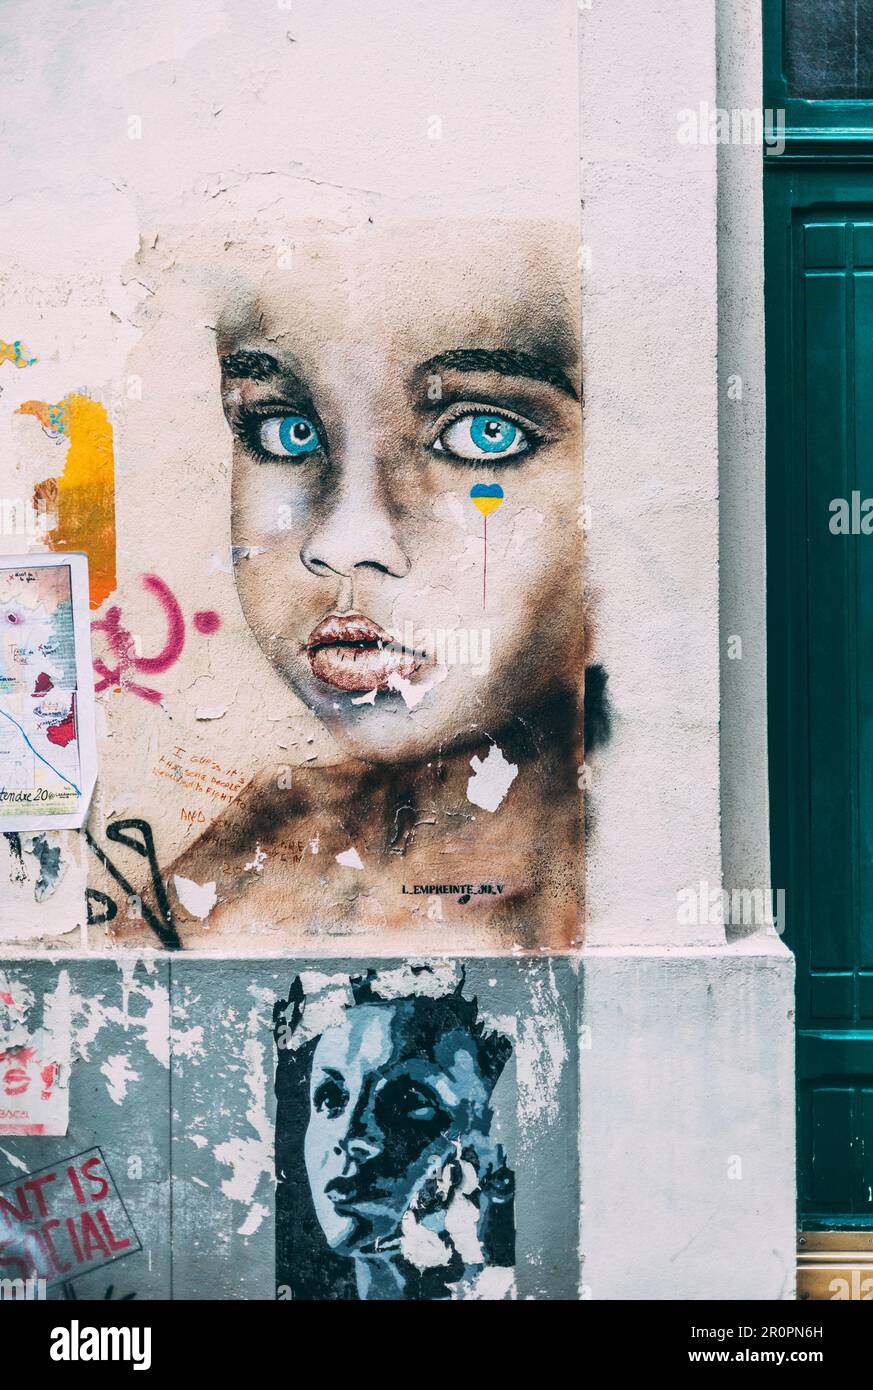 Paris, 27.04.23: Feature Bilder zu Paris. Auf den Bildern sind street art Werke aus dem Viertel Butte aux Cailles zu sehen, hier ein Kunstwerk zum Ukr Stock Photo